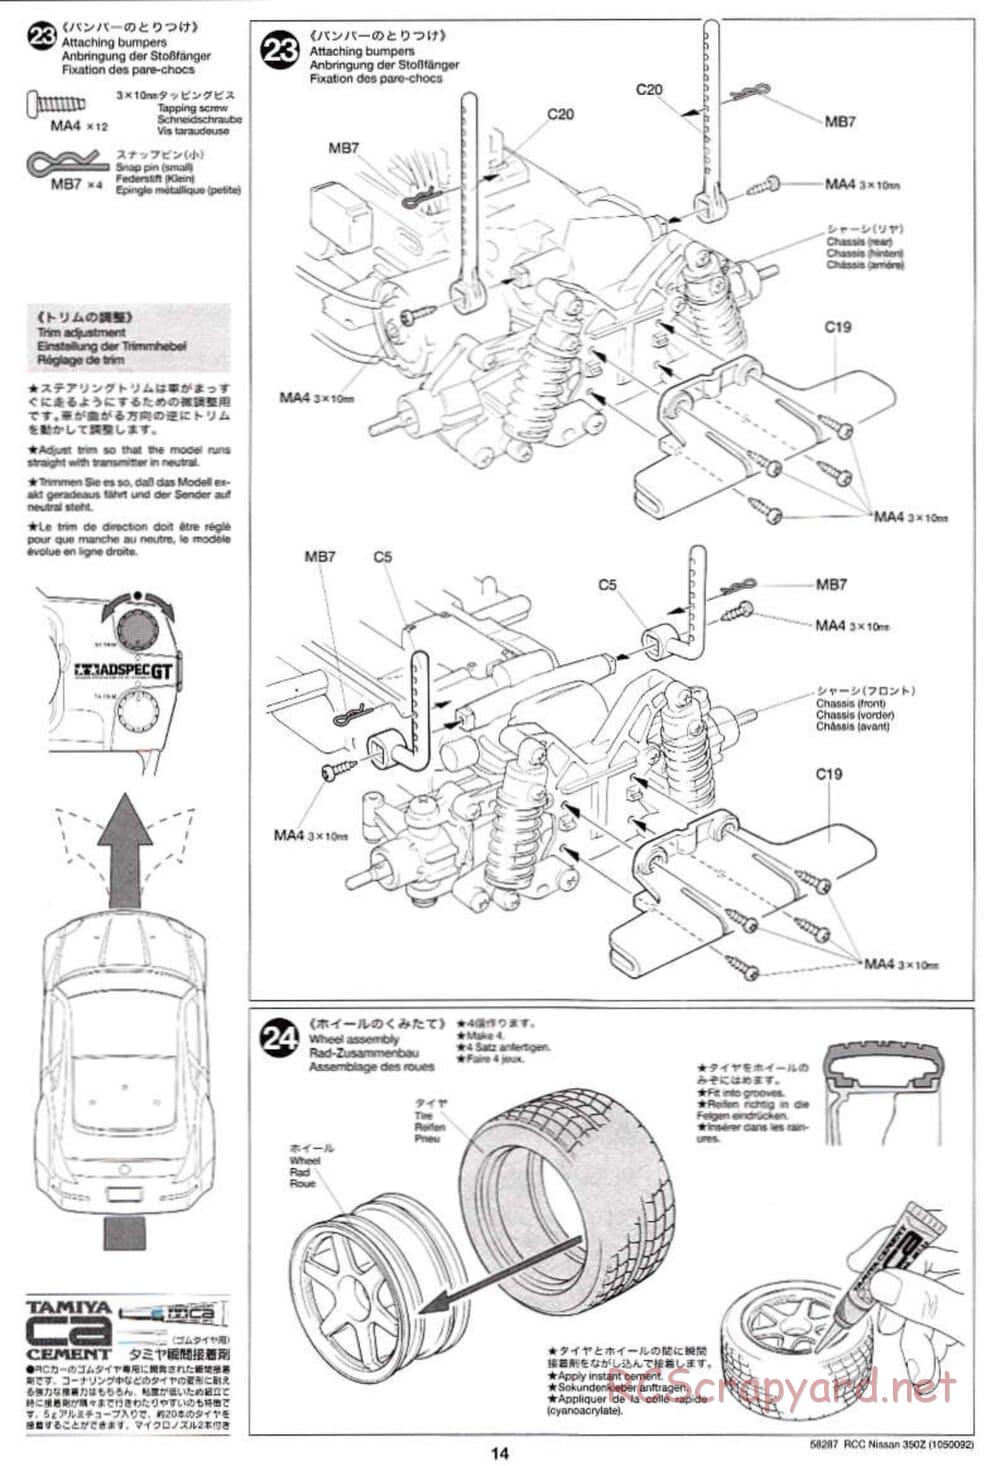 Tamiya - Nissan 350Z - TL-01 Chassis - Manual - Page 14